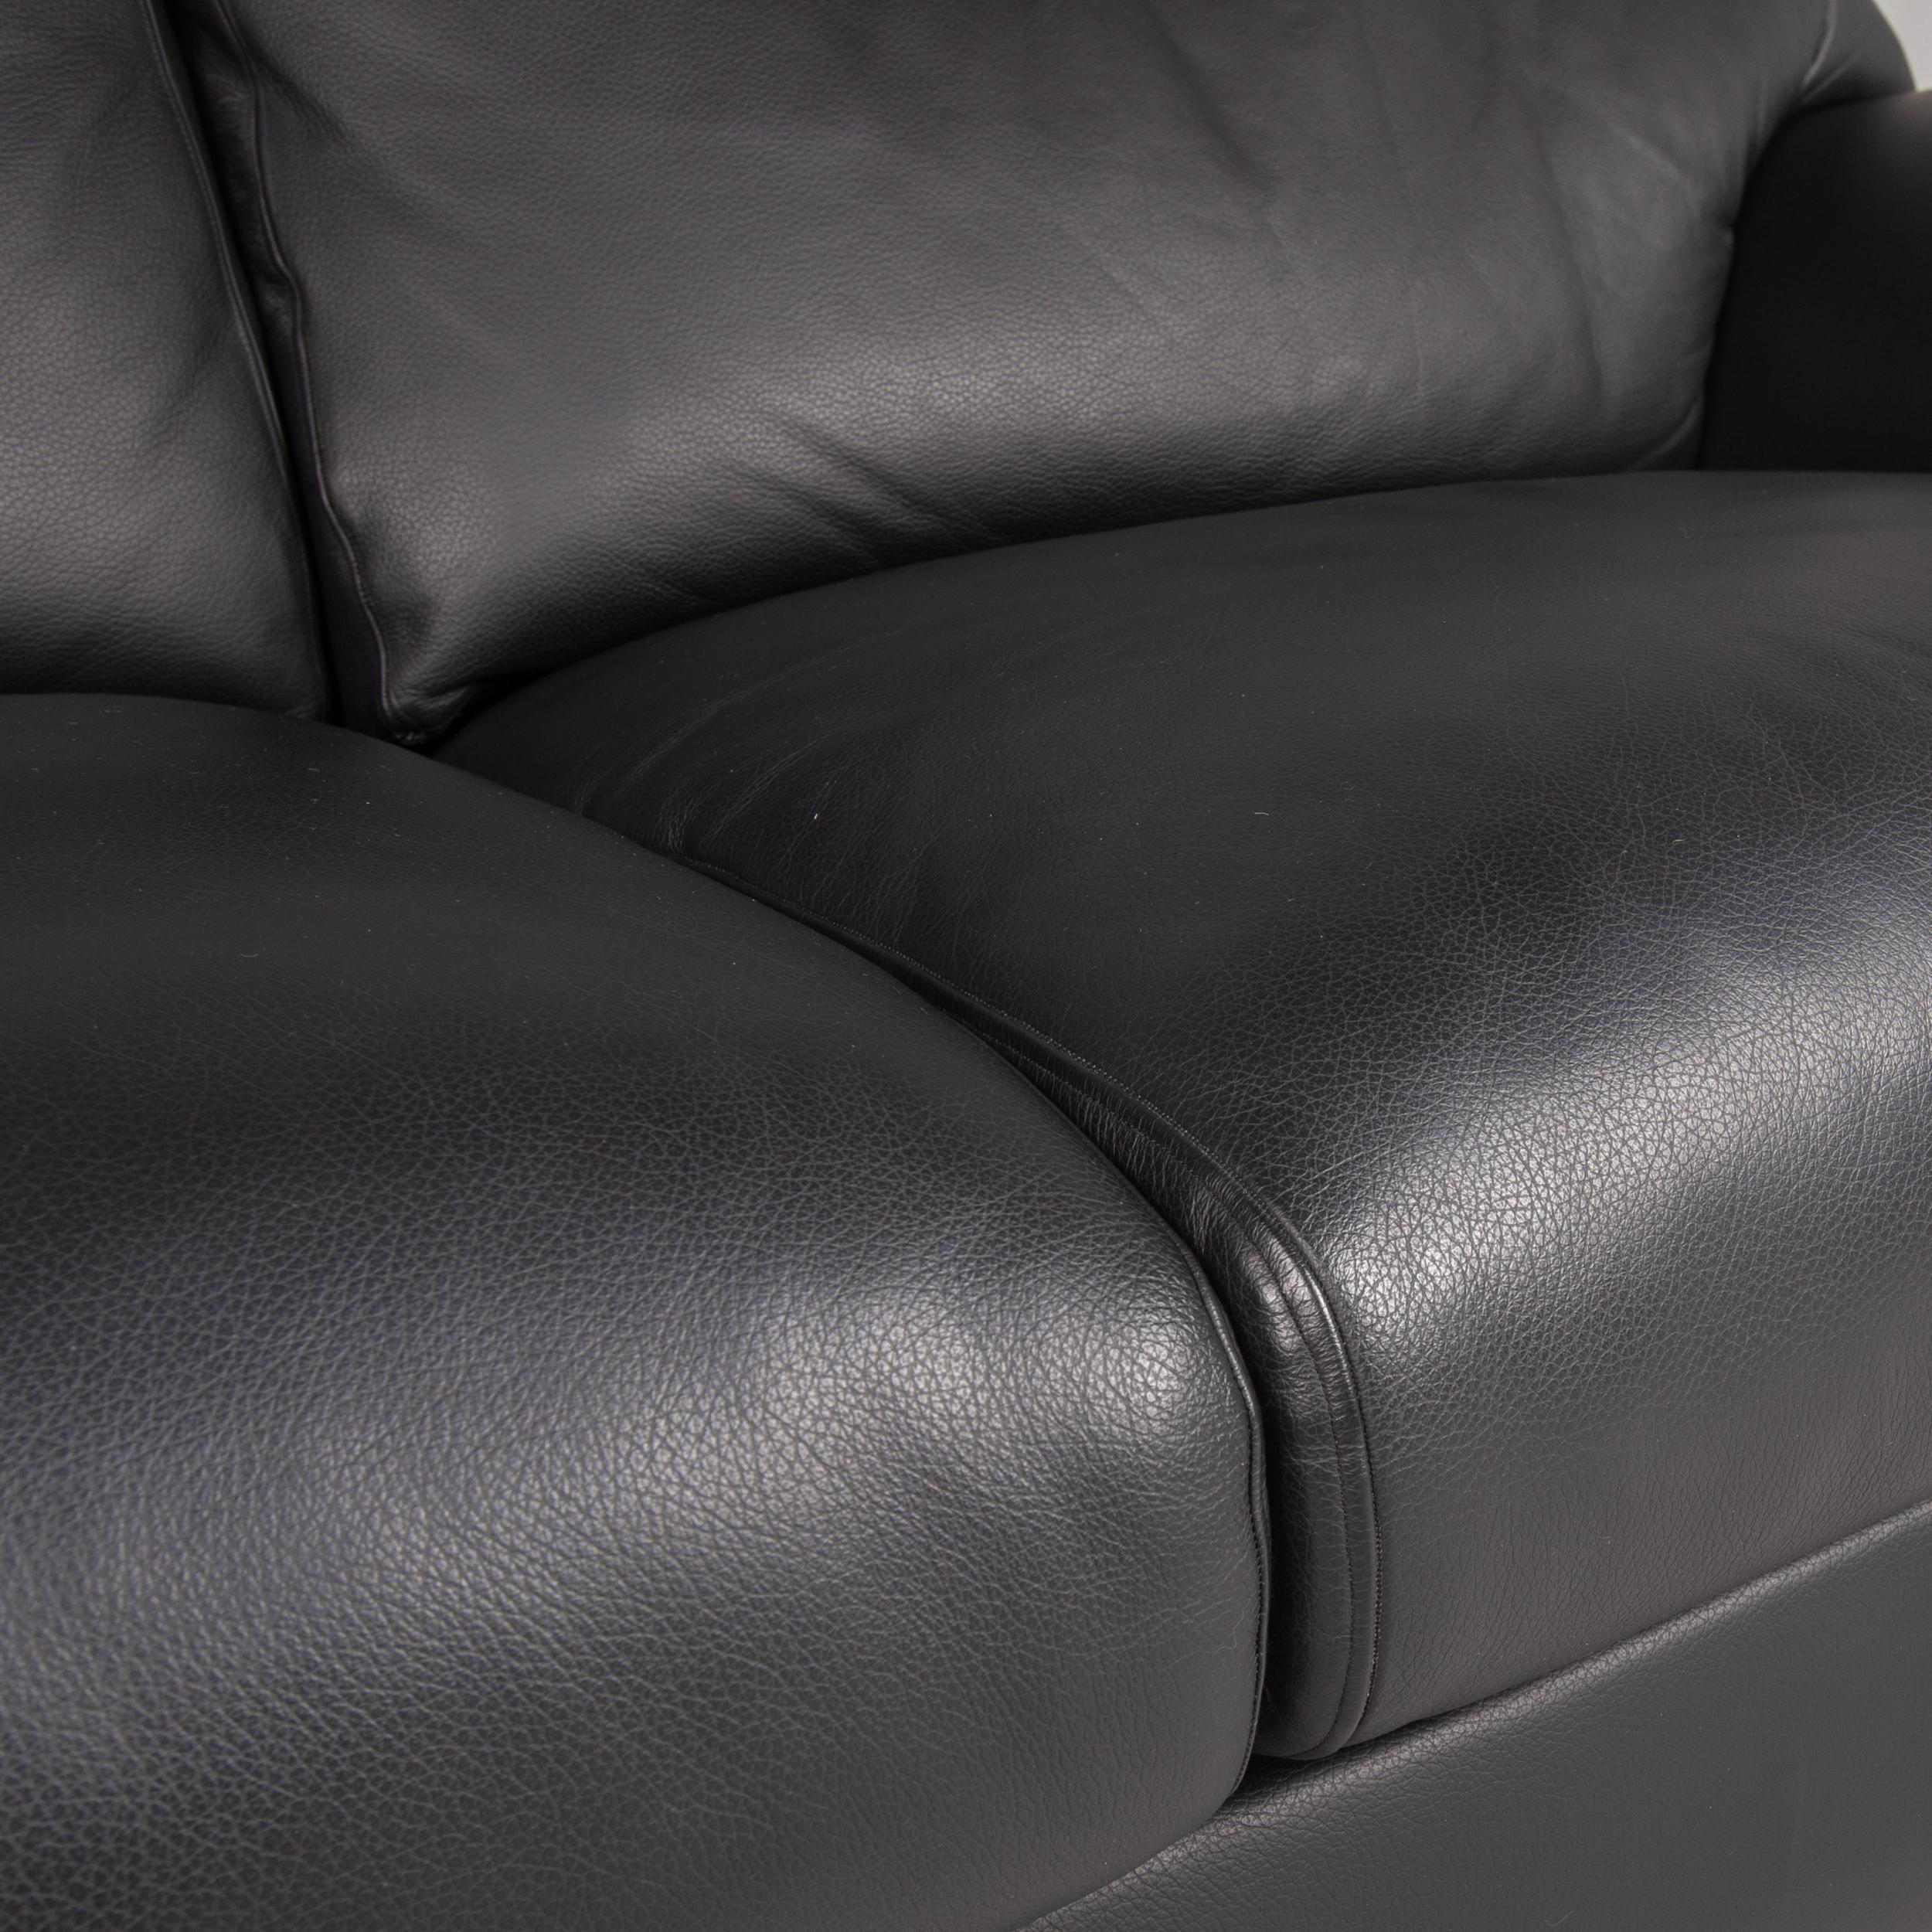 Modern Bielefelder Werkstätten Leather Sofa Black Two-Seater Couch